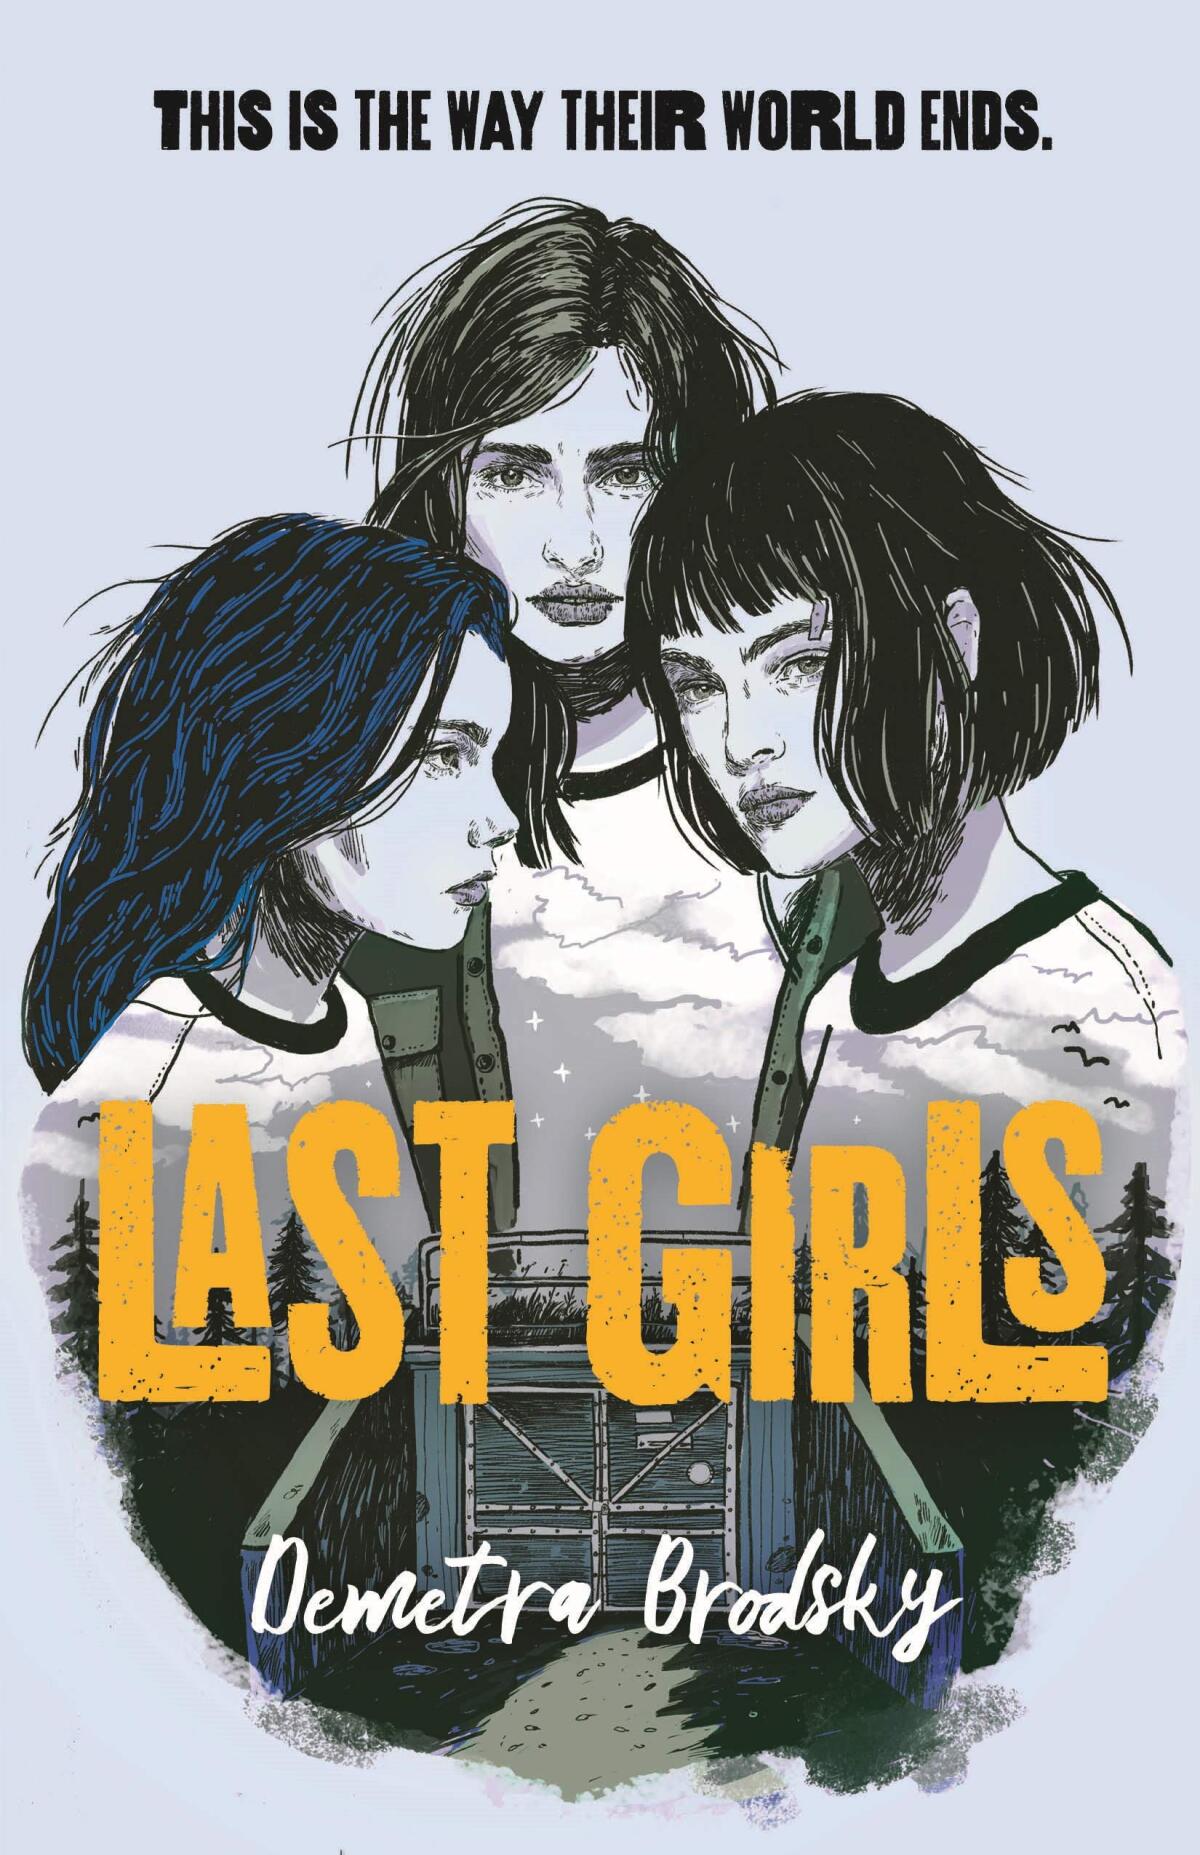 "Last Girls" by Demetra Brodsky